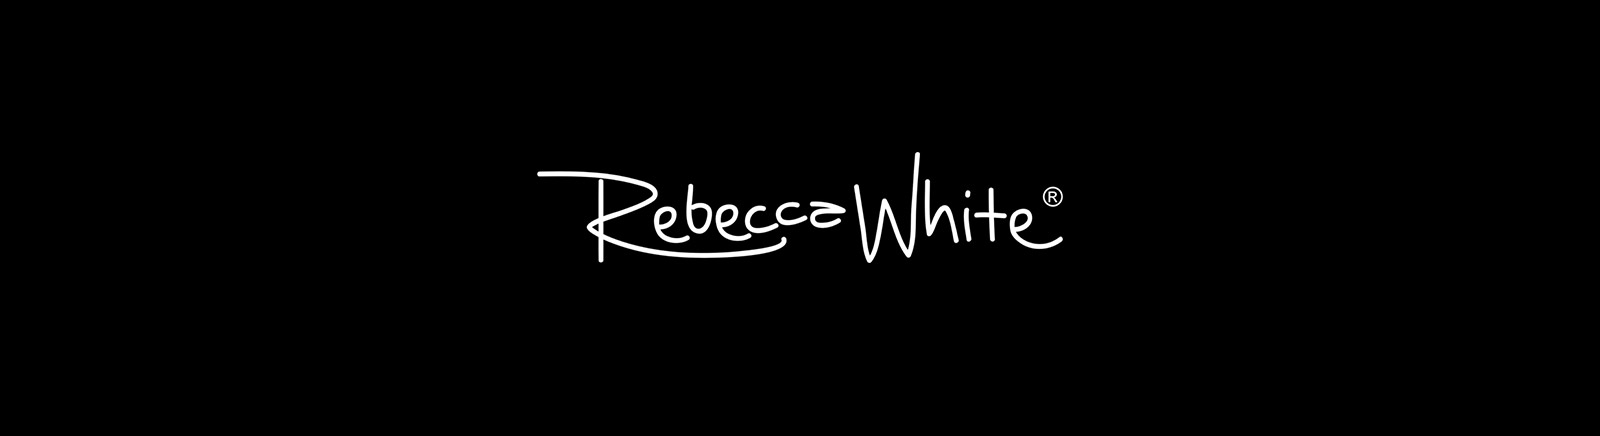 Rebecca White Damenschuhe online kaufen im GISY Schuhe Shop